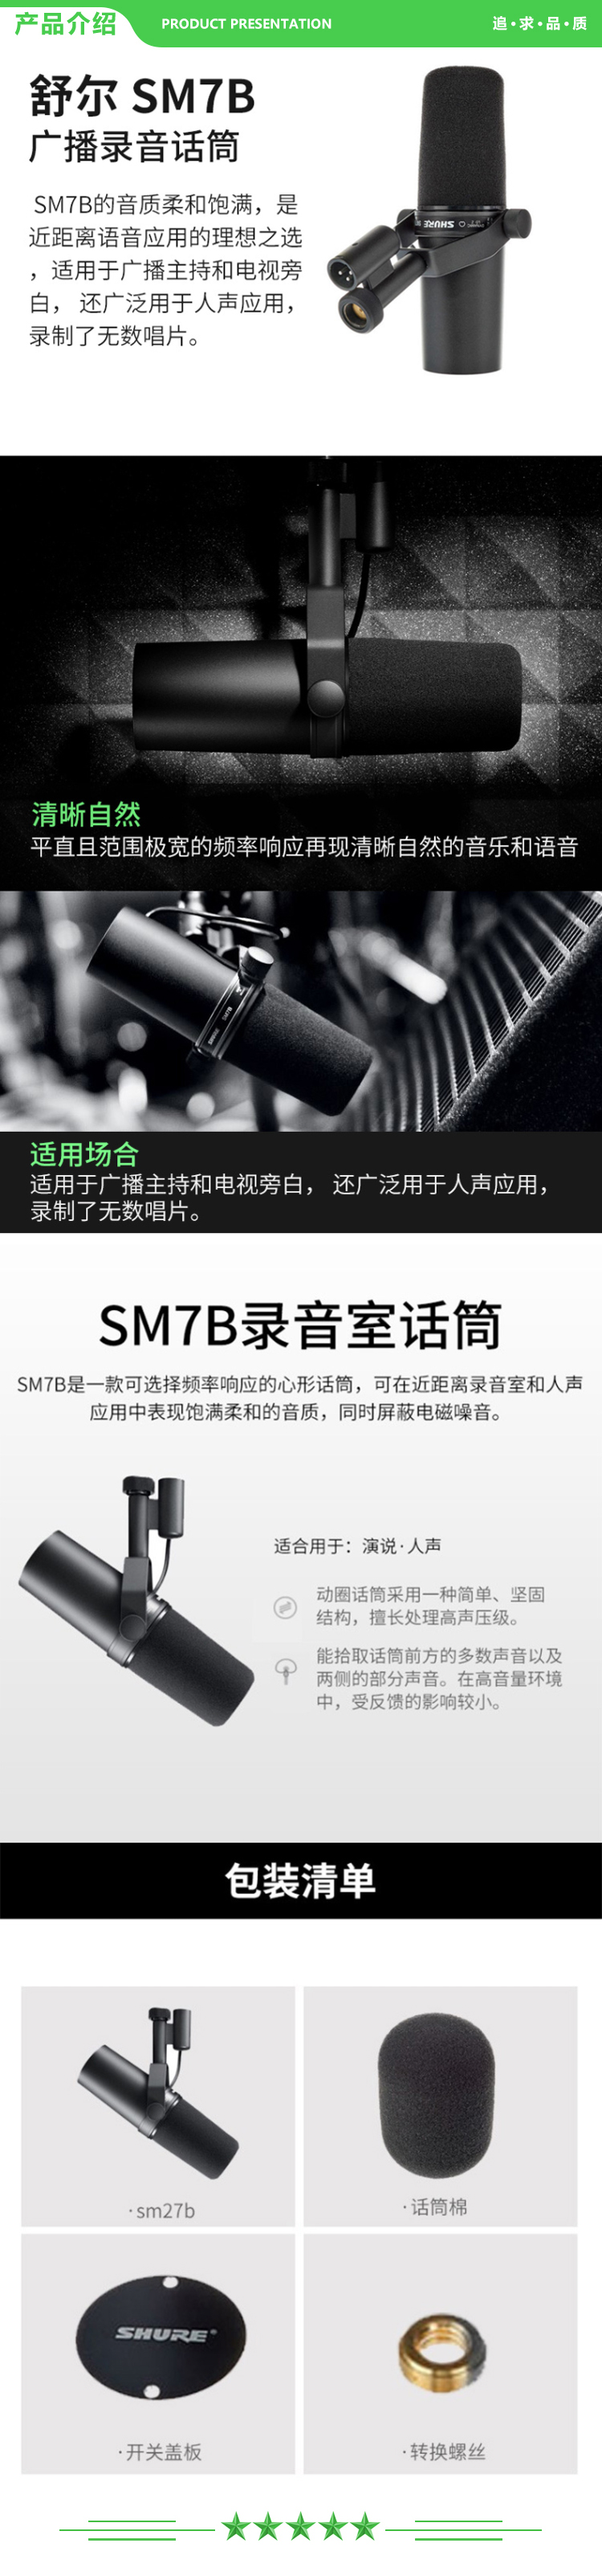 舒尔 Shure SM7B 直播录音动圈专业话筒 广播电台有声小说旁白录制麦克风 .jpg